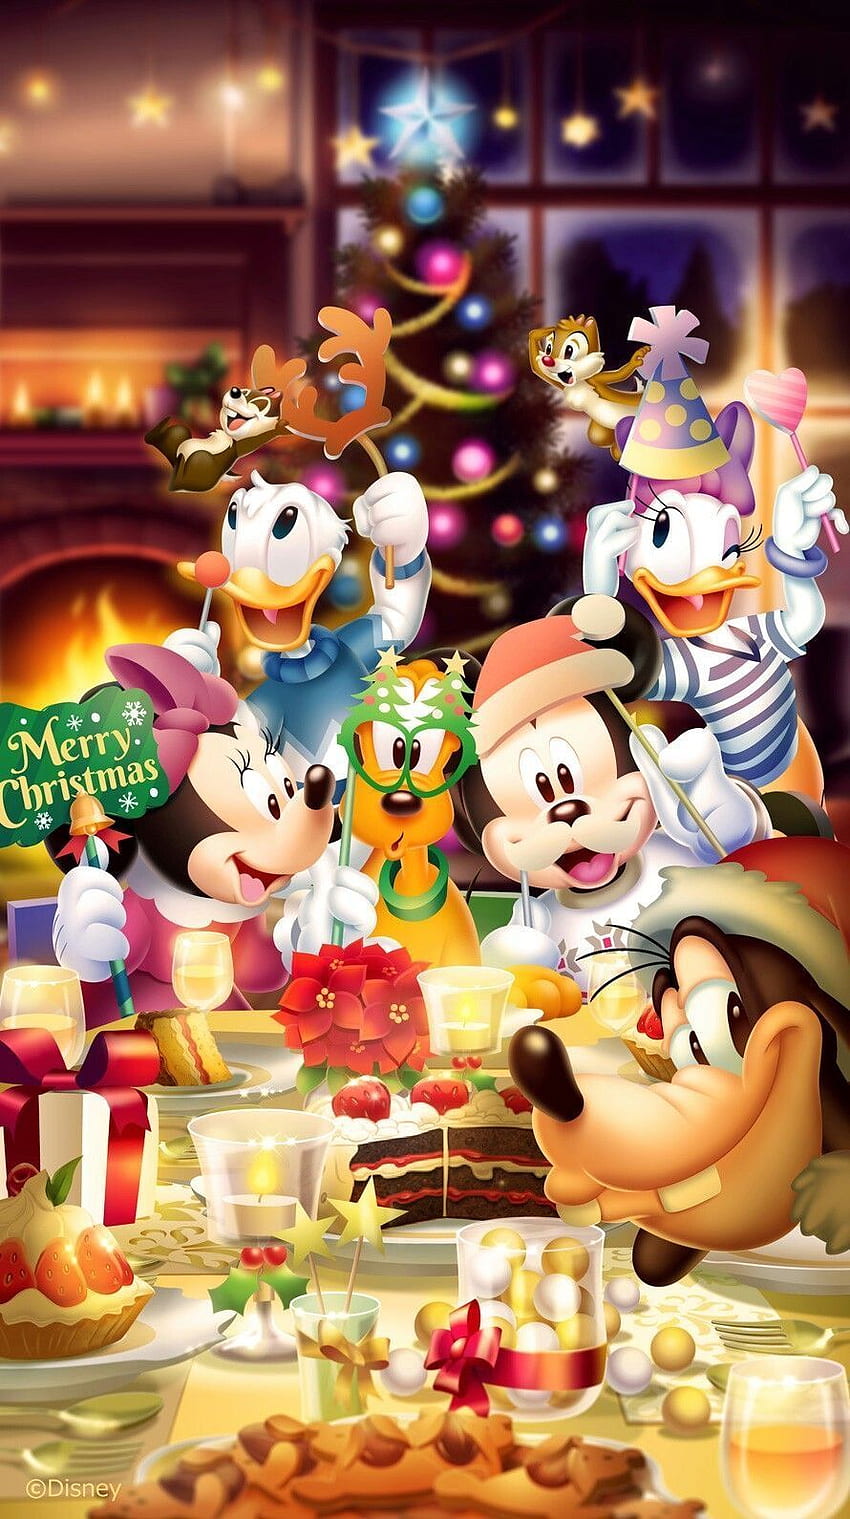 Bạn yêu thích Mickey Mouse và nhân vật của Disney vào dịp Giáng sinh? Hãy xem ngay bộ sưu tập các hình ảnh hết sức dễ thương và độc đáo của Joyeux Noel chez Mickey. Bạn sẽ được khám phá những ý tưởng trang trí vô cùng độc đáo từ những chiếc bánh, cây thông lấp lánh đến những món quà ngộ nghĩnh.